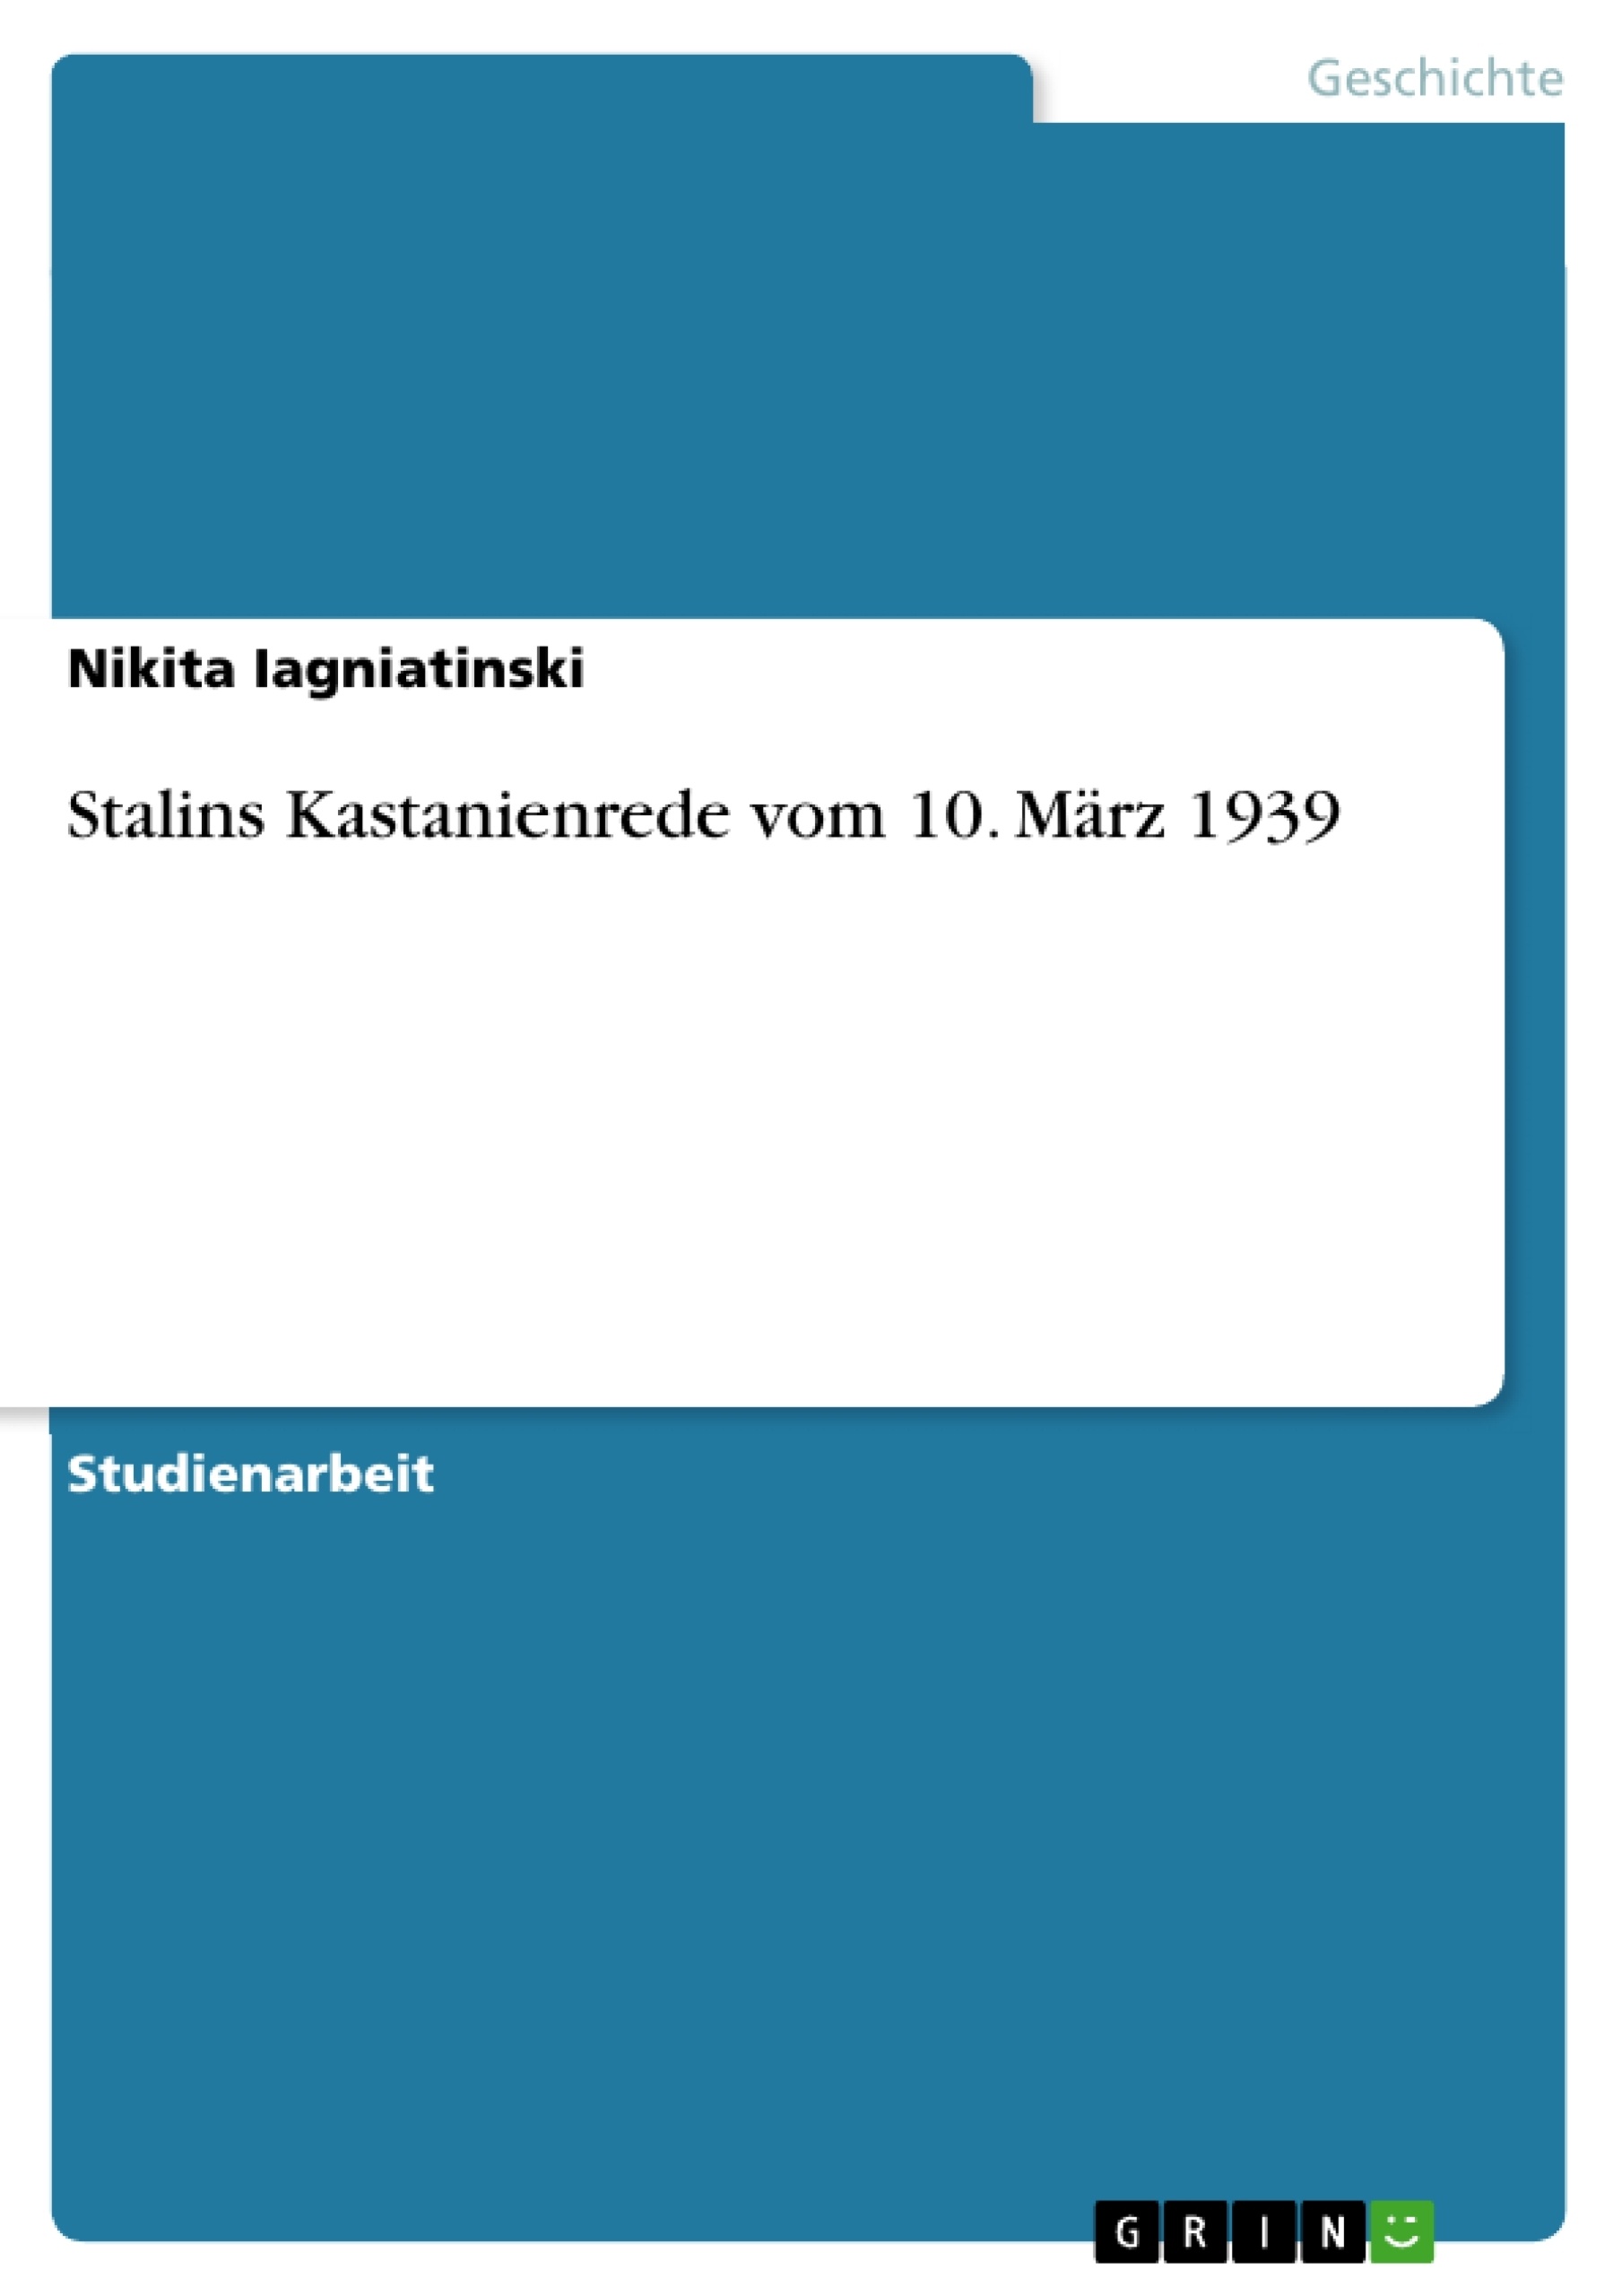 Title: Stalins Kastanienrede vom 10. März 1939